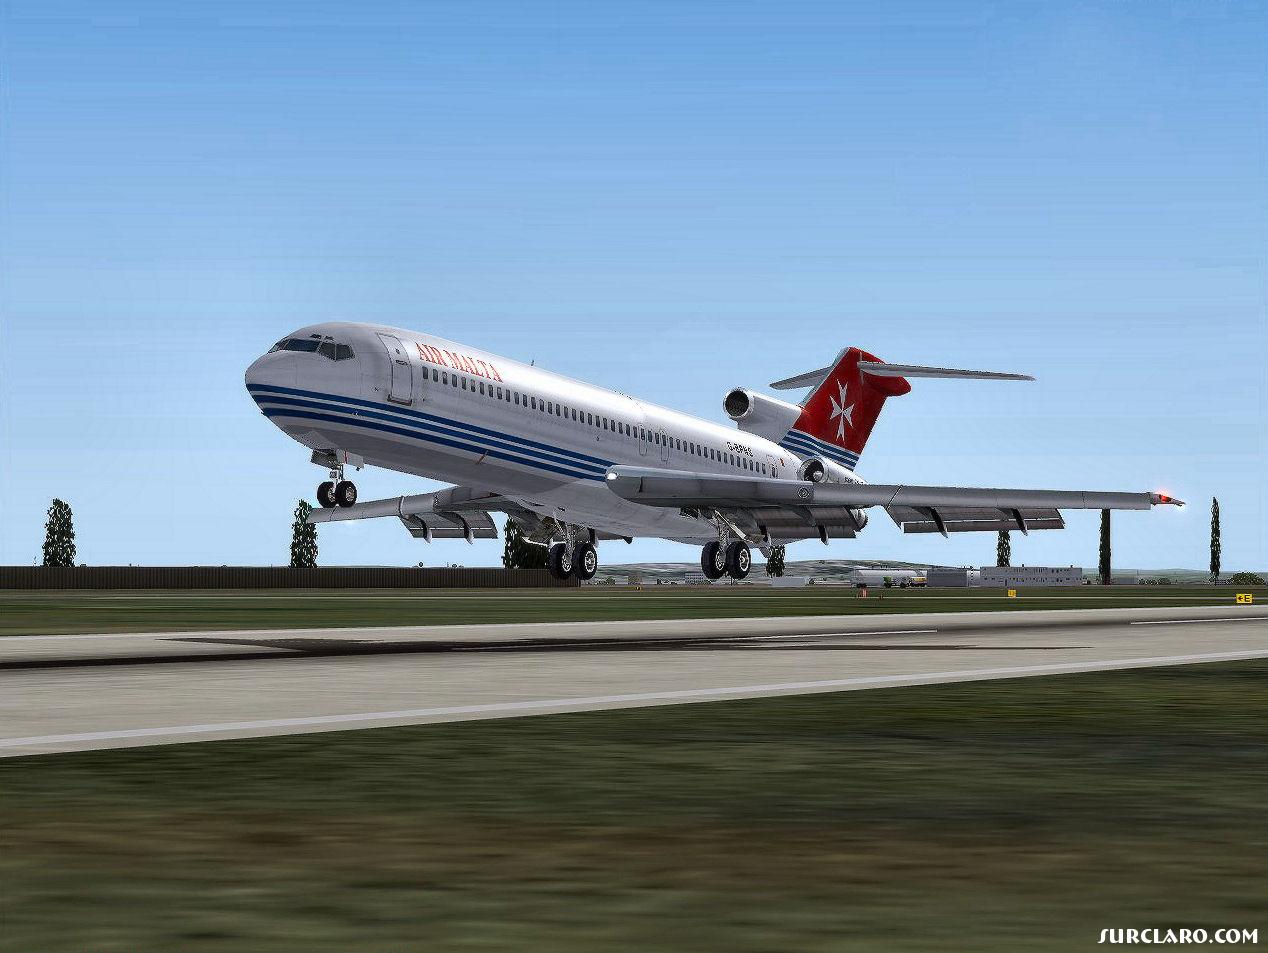 AIR MALTA 727-200 close to touchdown rwy 10 @ EDDN! - Photo 16158